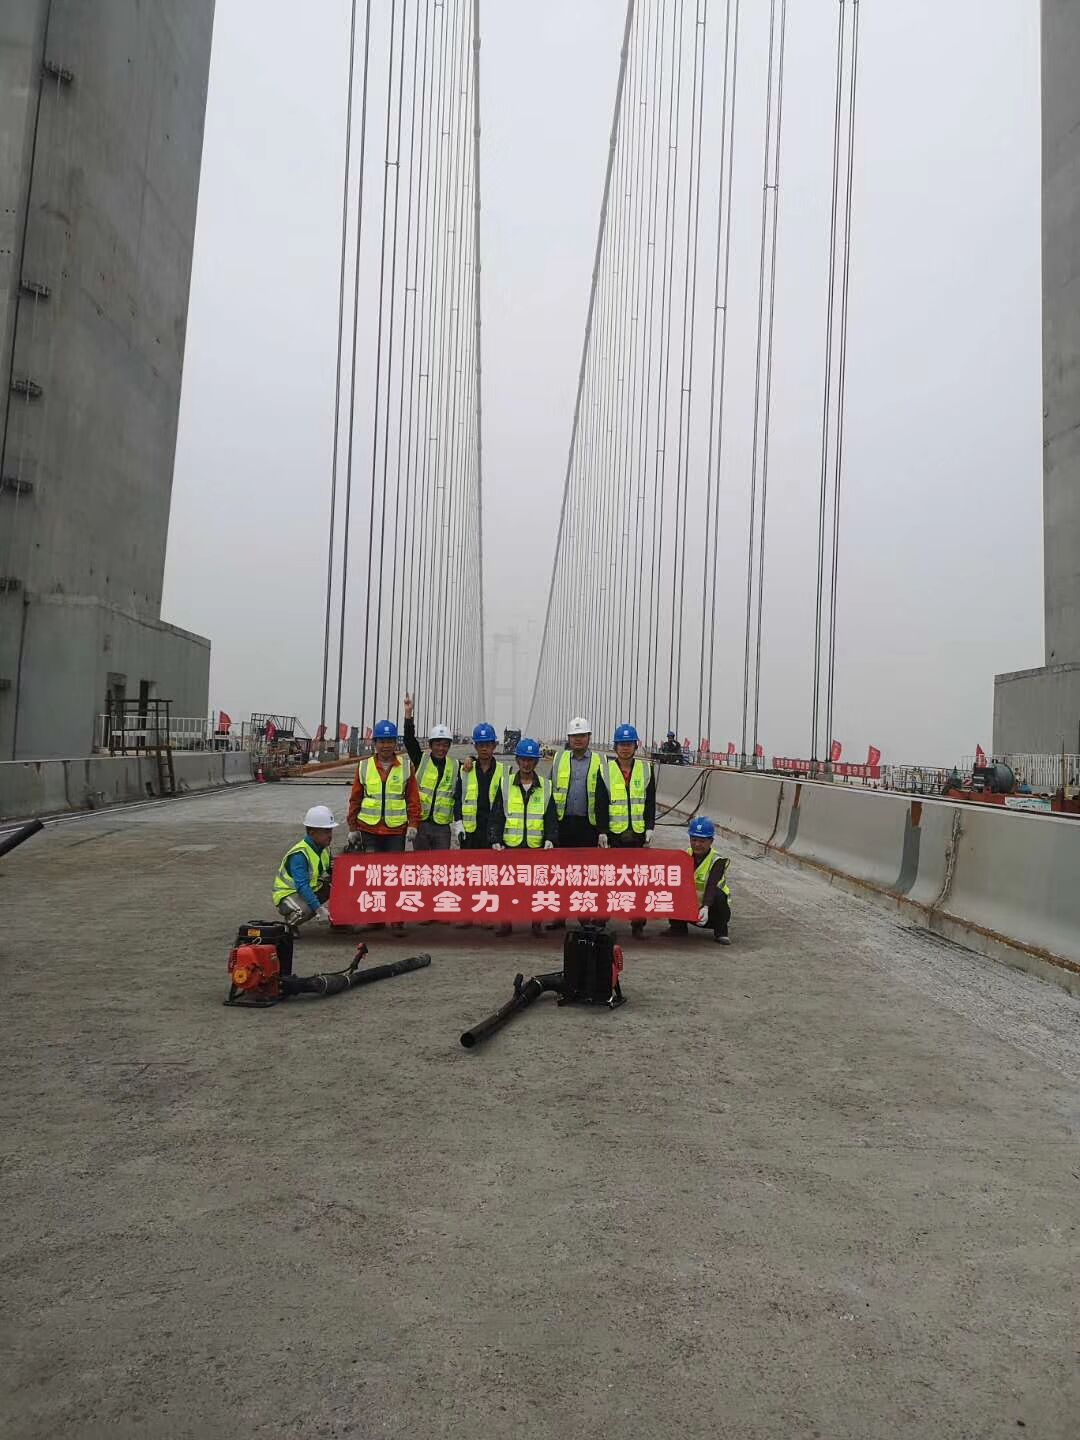 广州艺佰涂科技有限公司 绍兴纤维增强型桥面防水涂料促销